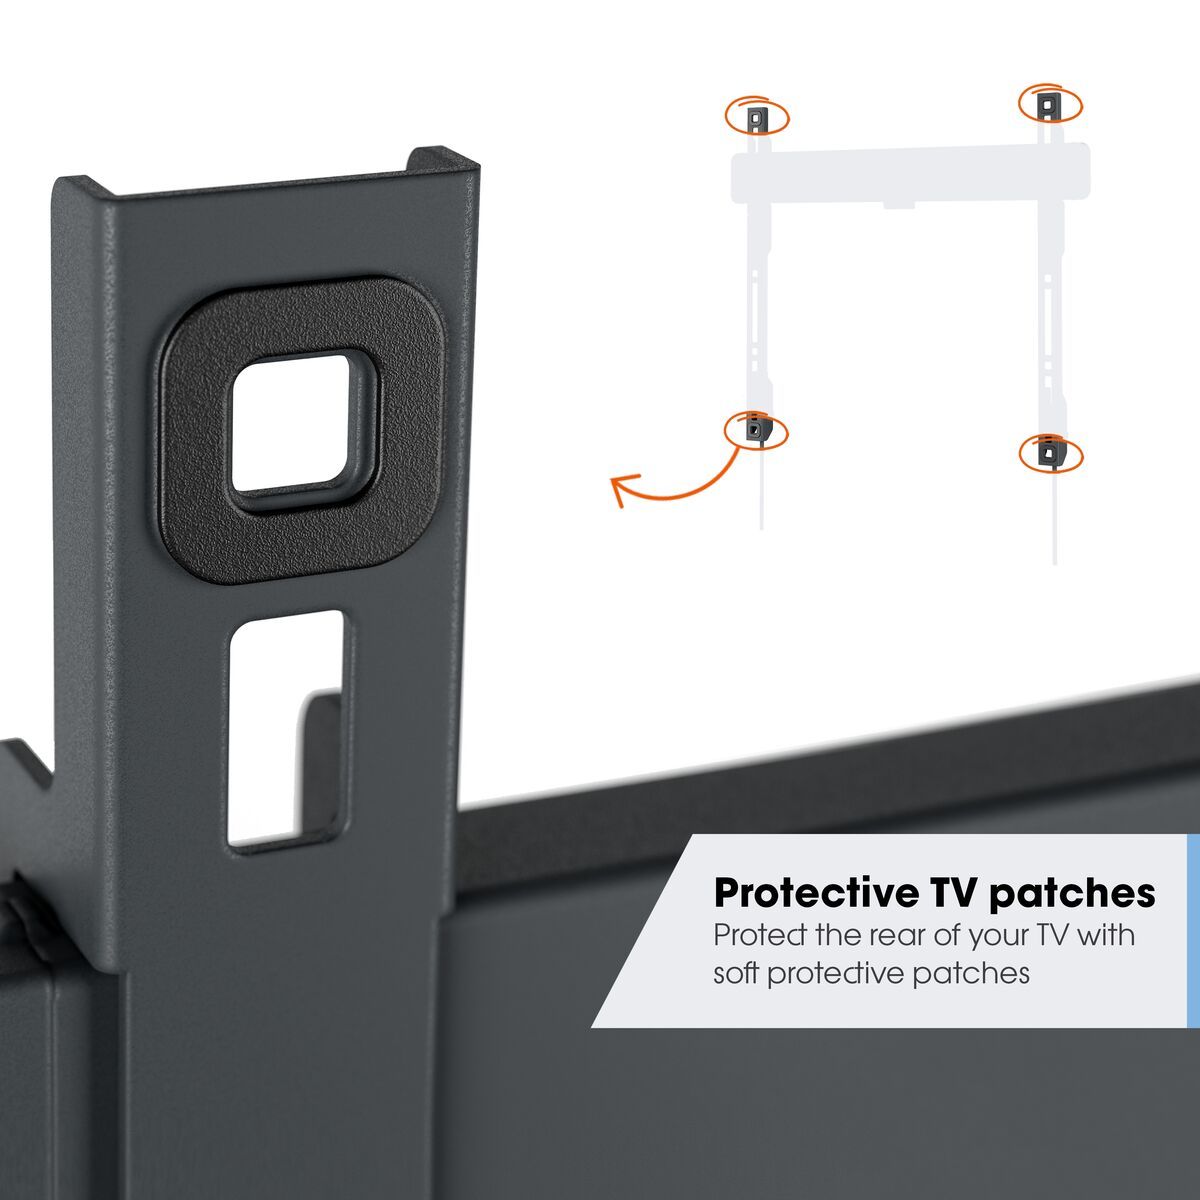 Vogel's TVM 3415 Neigbare TV-Wandhalterung - Geeignet für Fernseher von 32 bis 65 Zoll - Bis zu 20° neigbar - USP